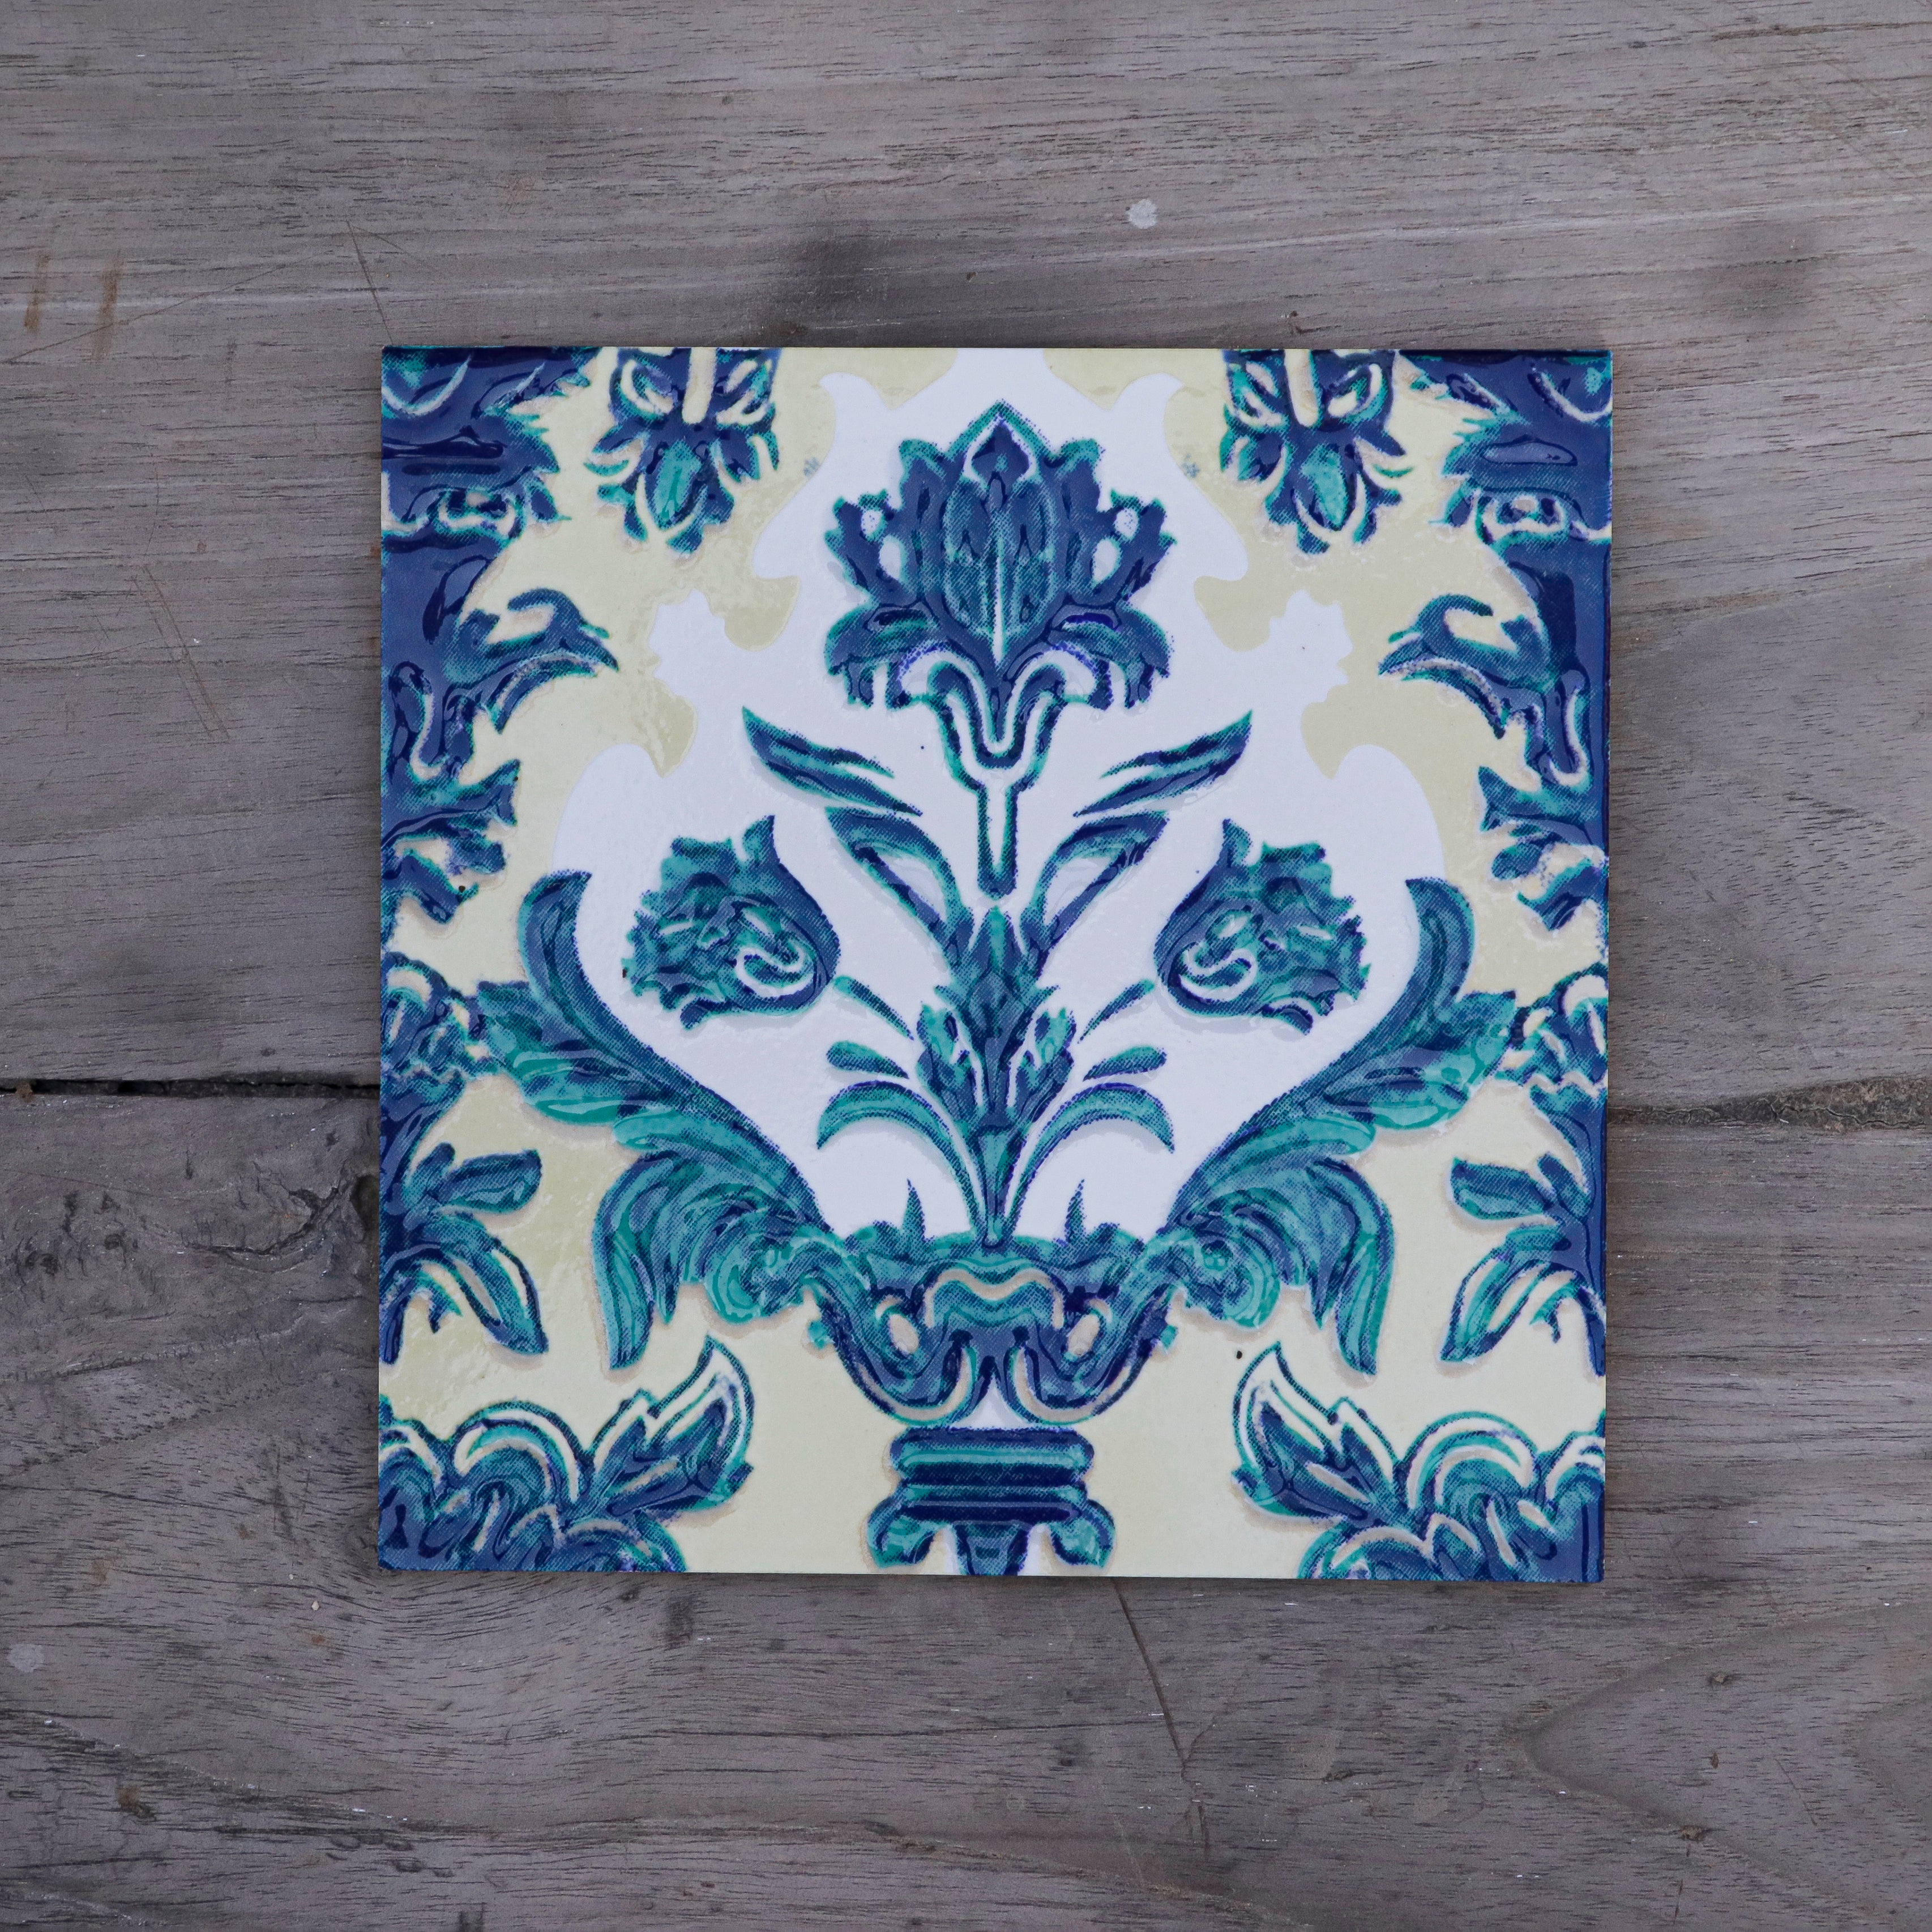 Unique Blueberry Flower Designed Ceramic Tile Ceramic Tile